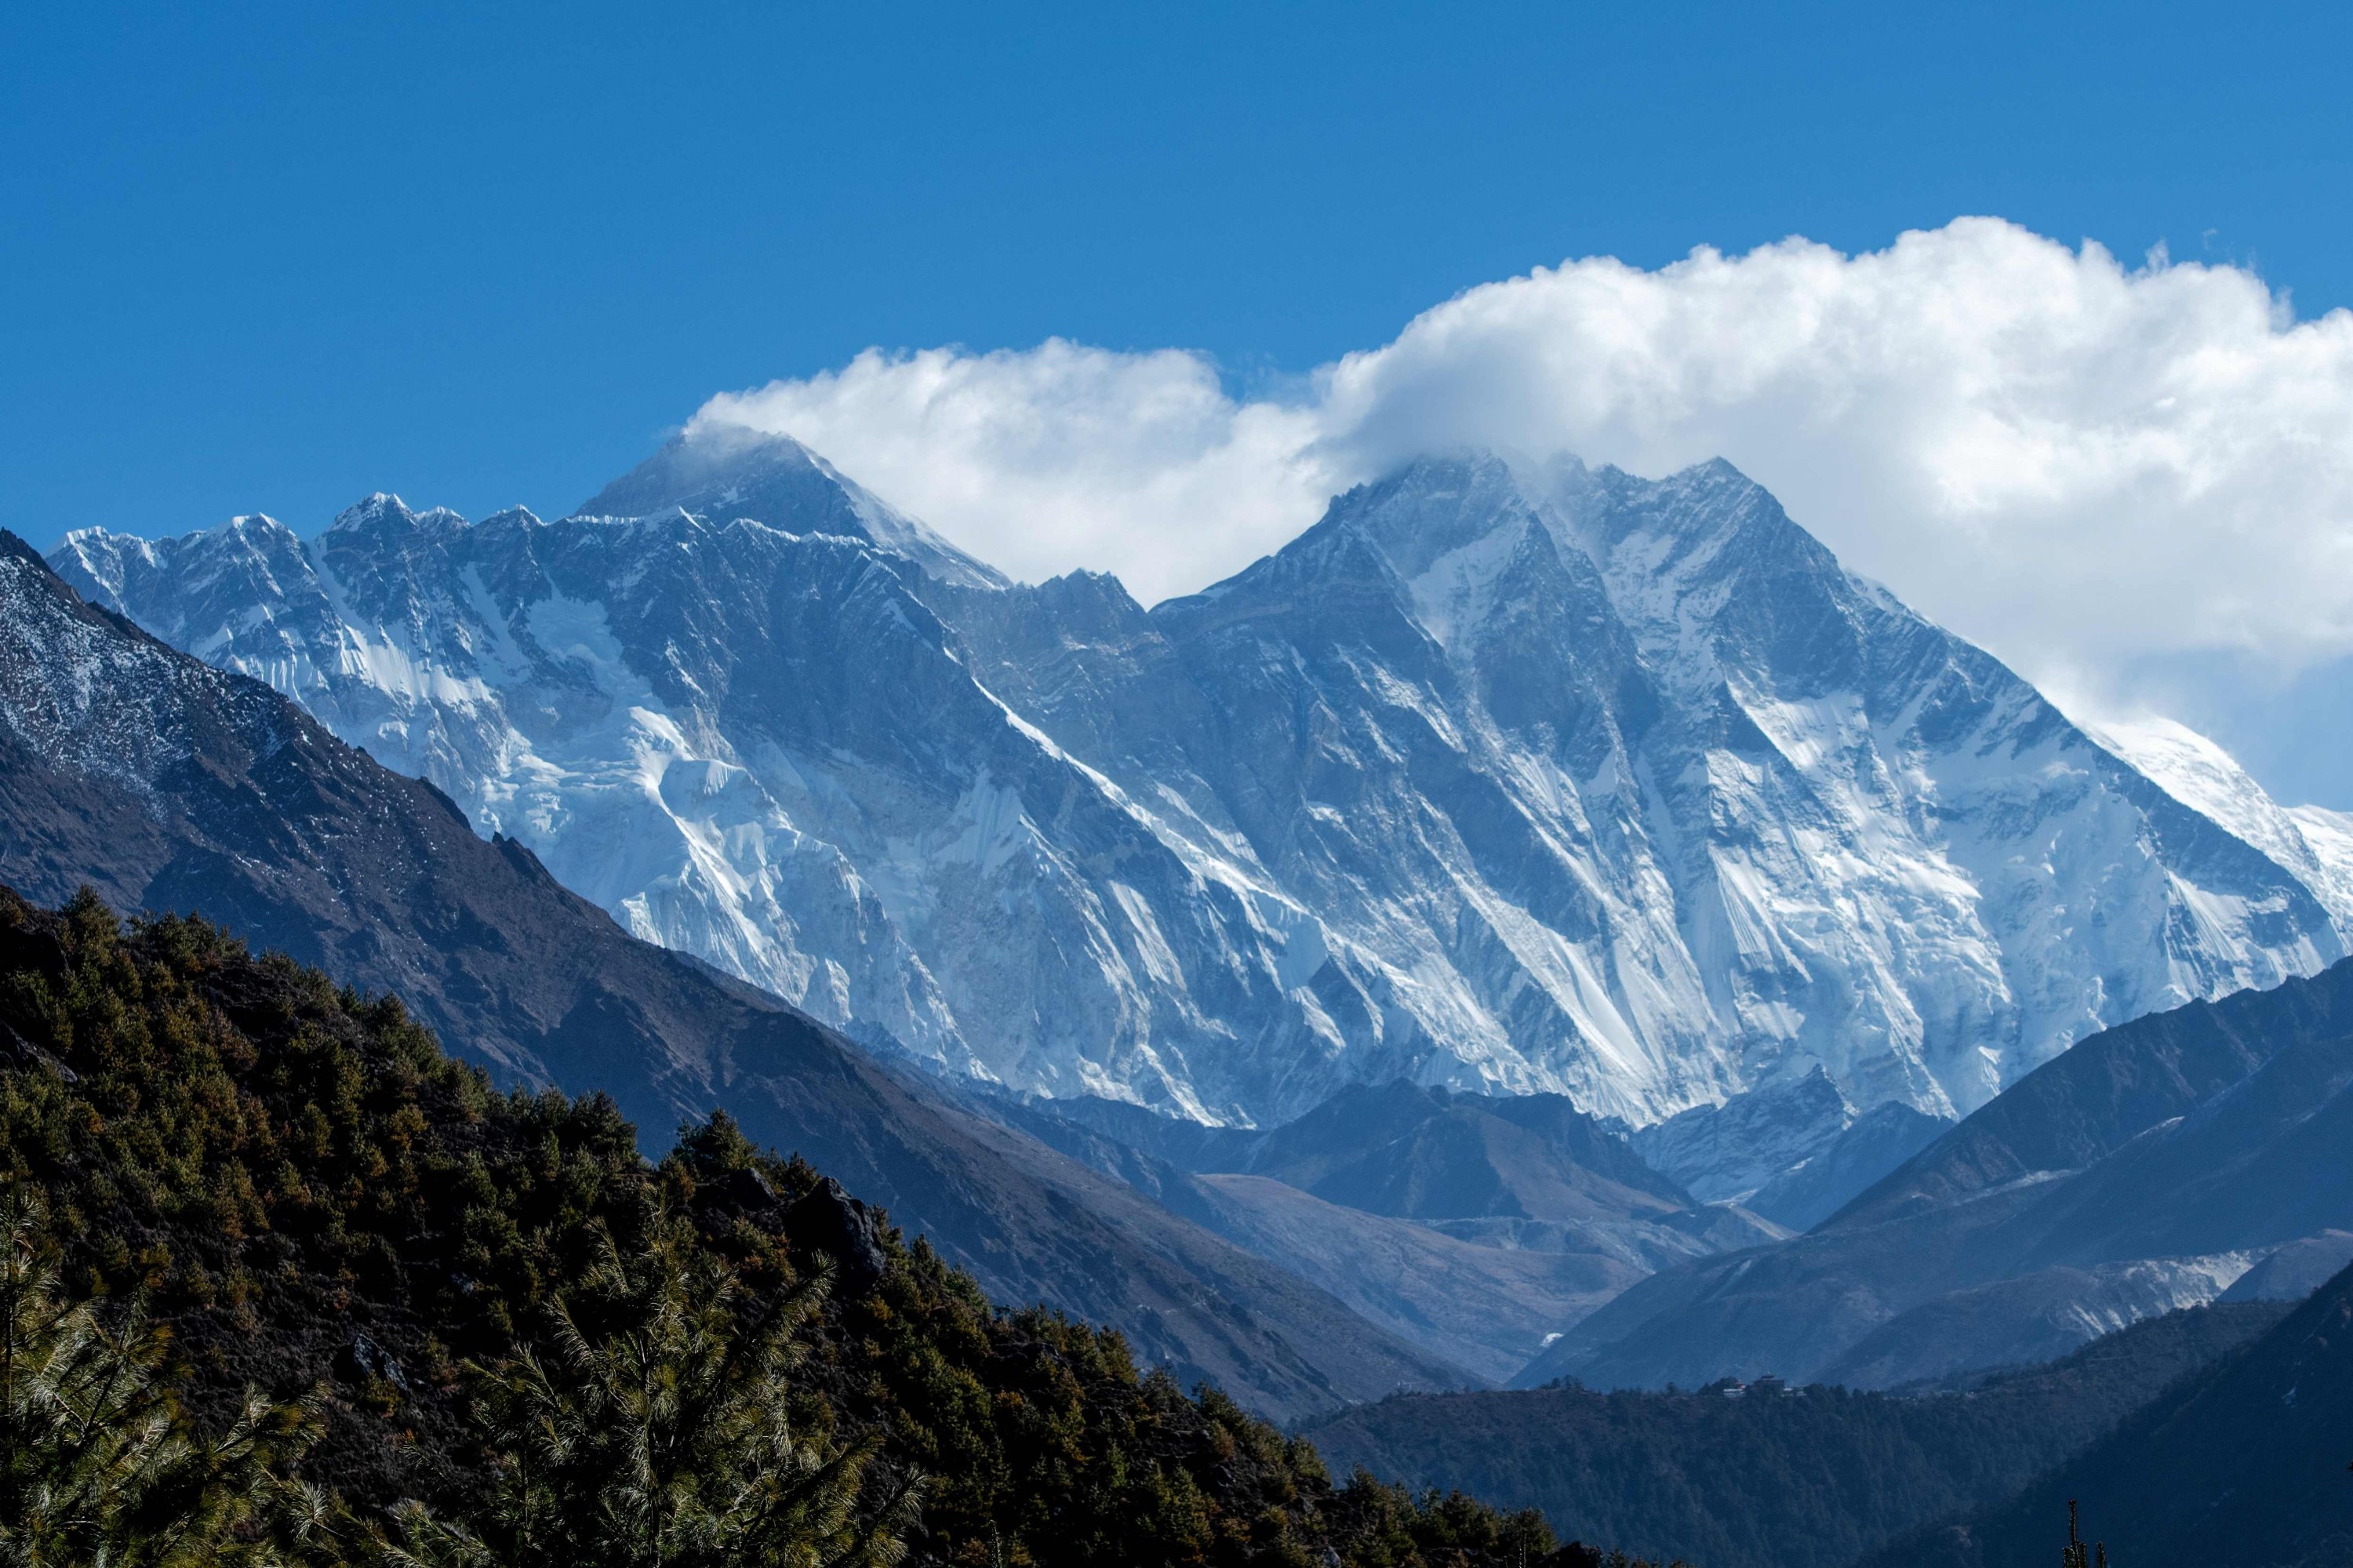 Is K2 taller than Everest?